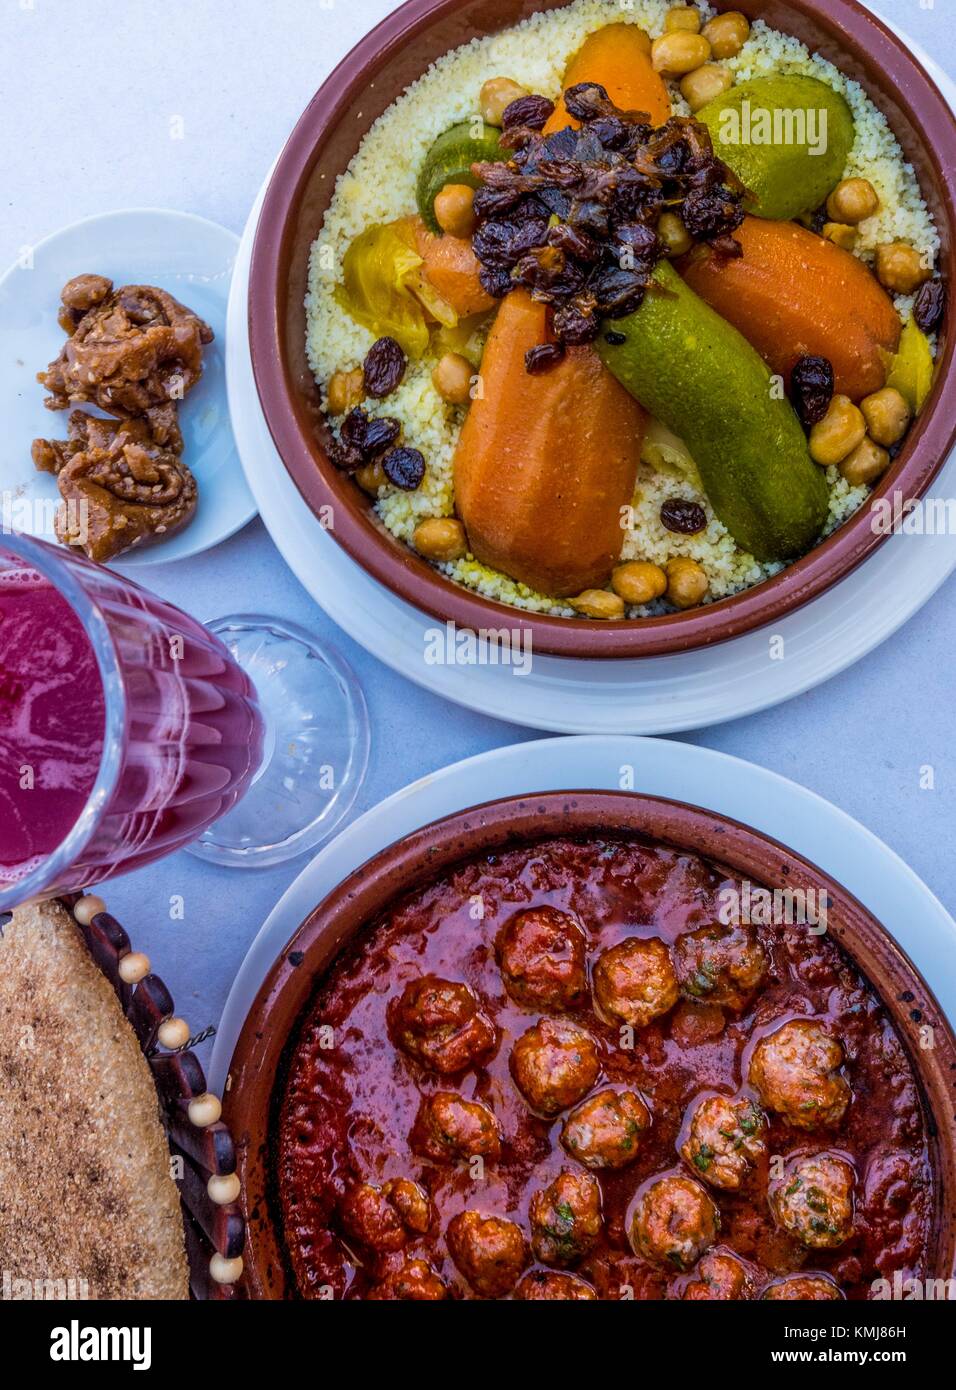 Marokko, das Essen, die 'Kesra' Brot, Granatapfelsaft. 'Chebakia' süße honney Kuchen", Kefta Tagine" (Hackfleisch Kugeln tagine) und "Couscous". Stockfoto